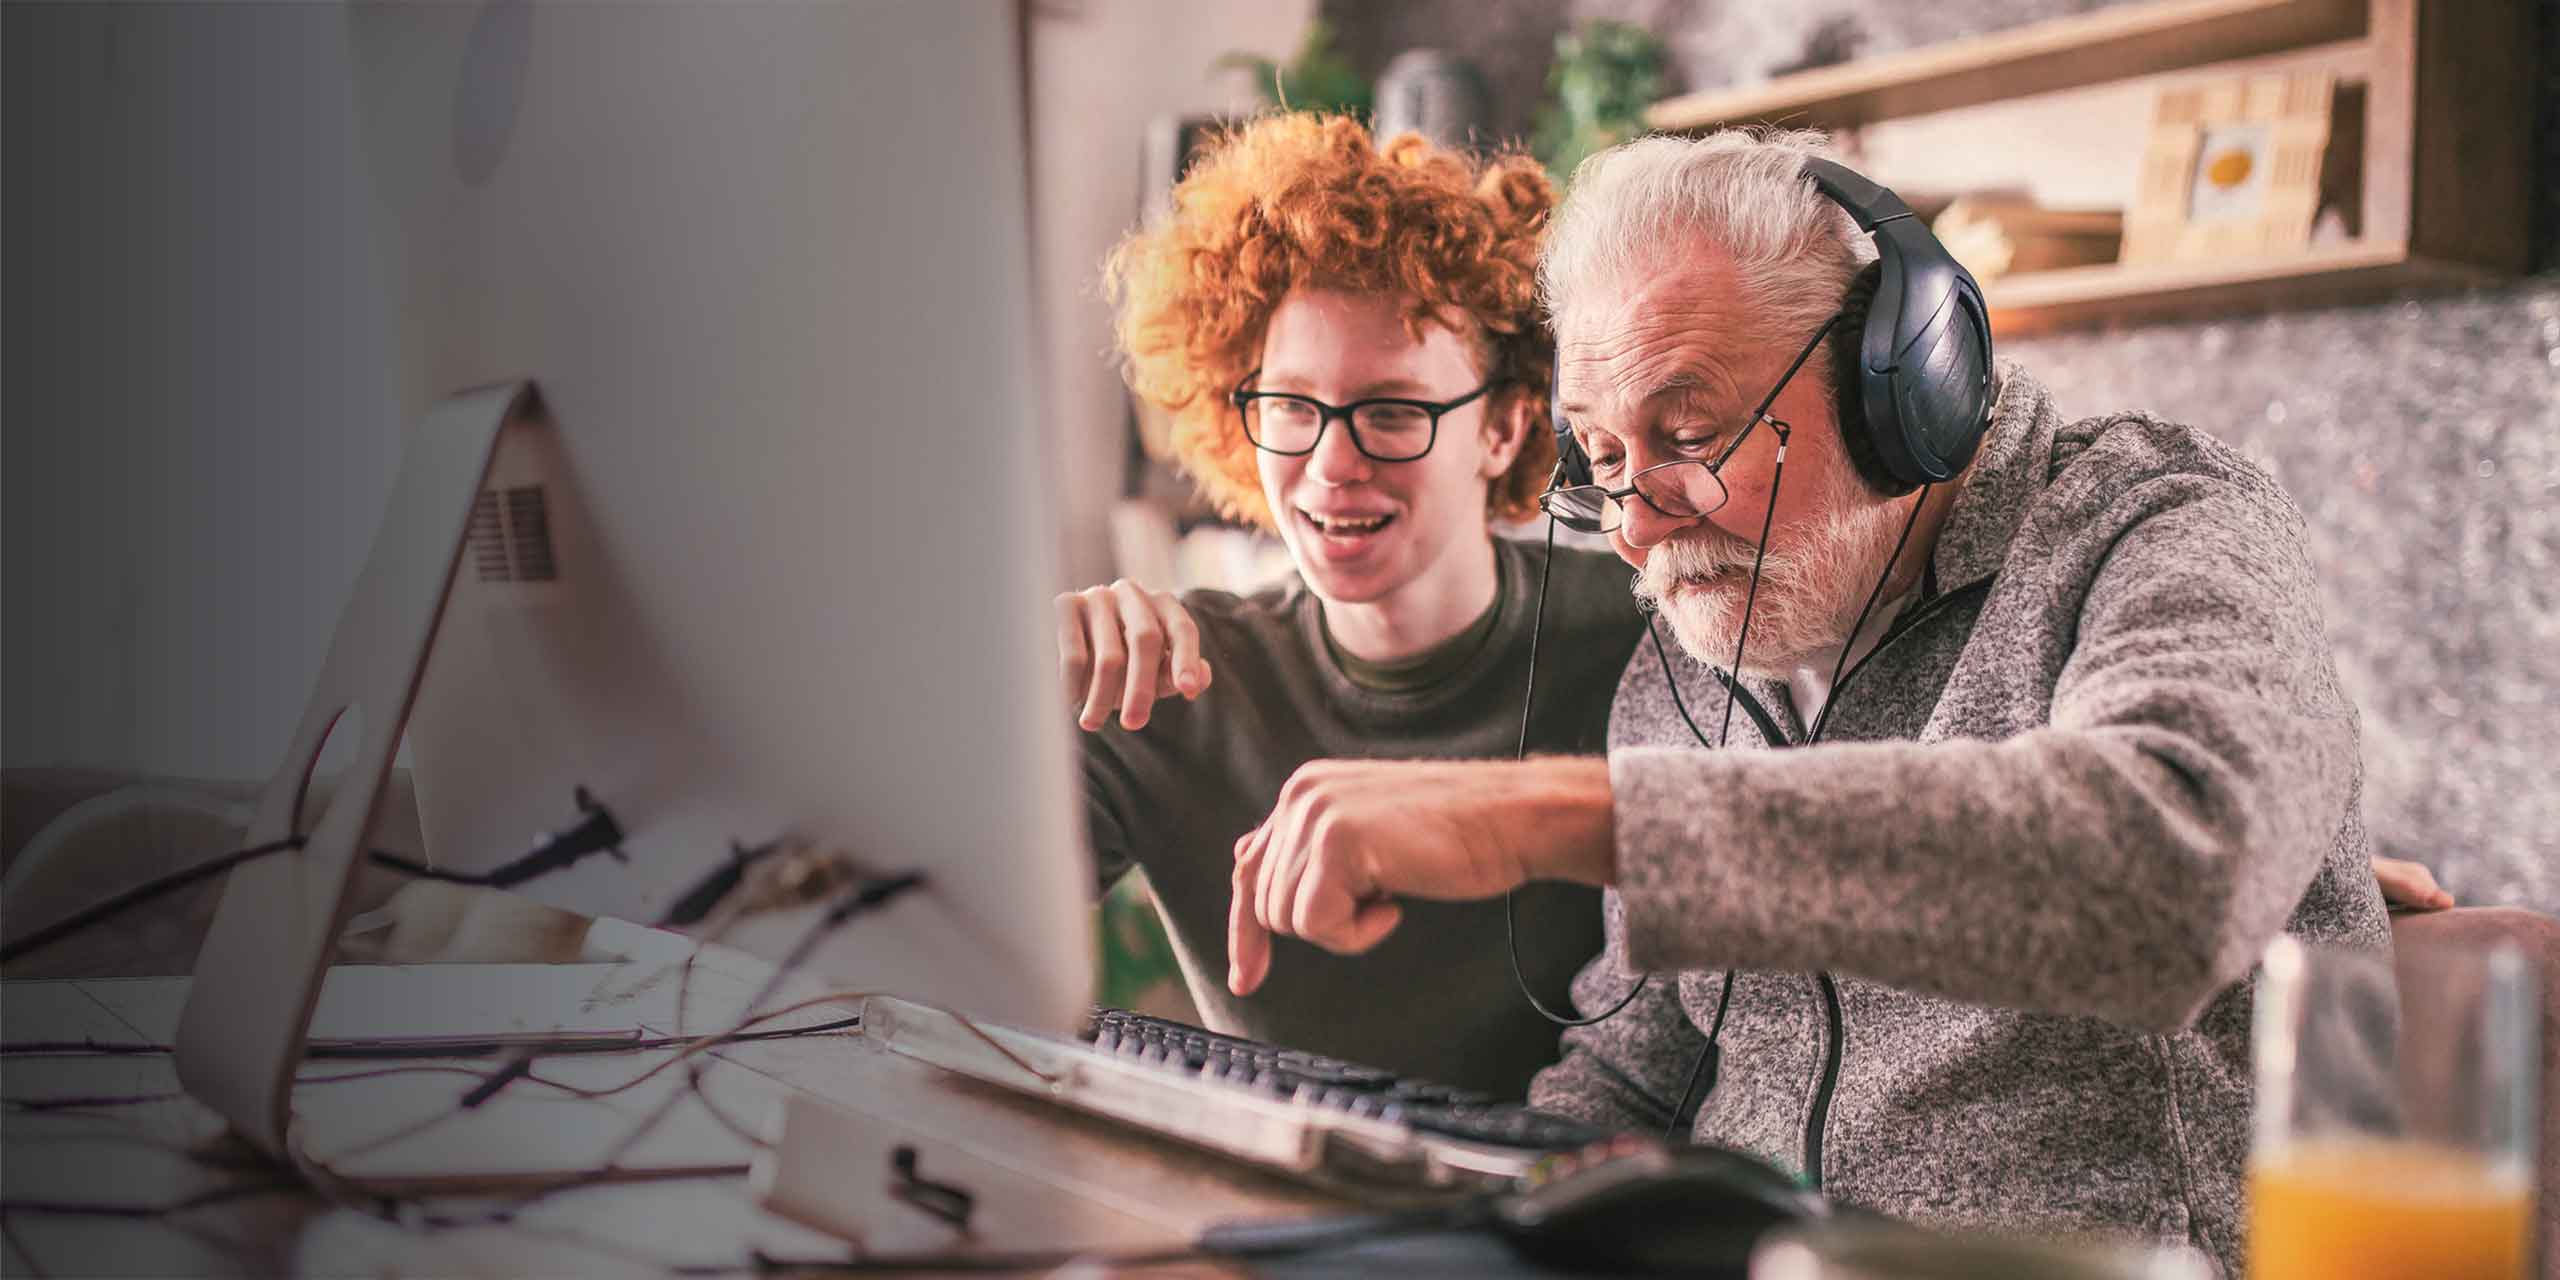 Ein älterer Herr mit Kopfhörern und ein junger Erwachsener mit lockigem rotem Haar lächeln und zeigen auf einen Computerbildschirm. Sie sind in einem gemütlichen Raum gemeinsam einer Aktivität nachgegangen.